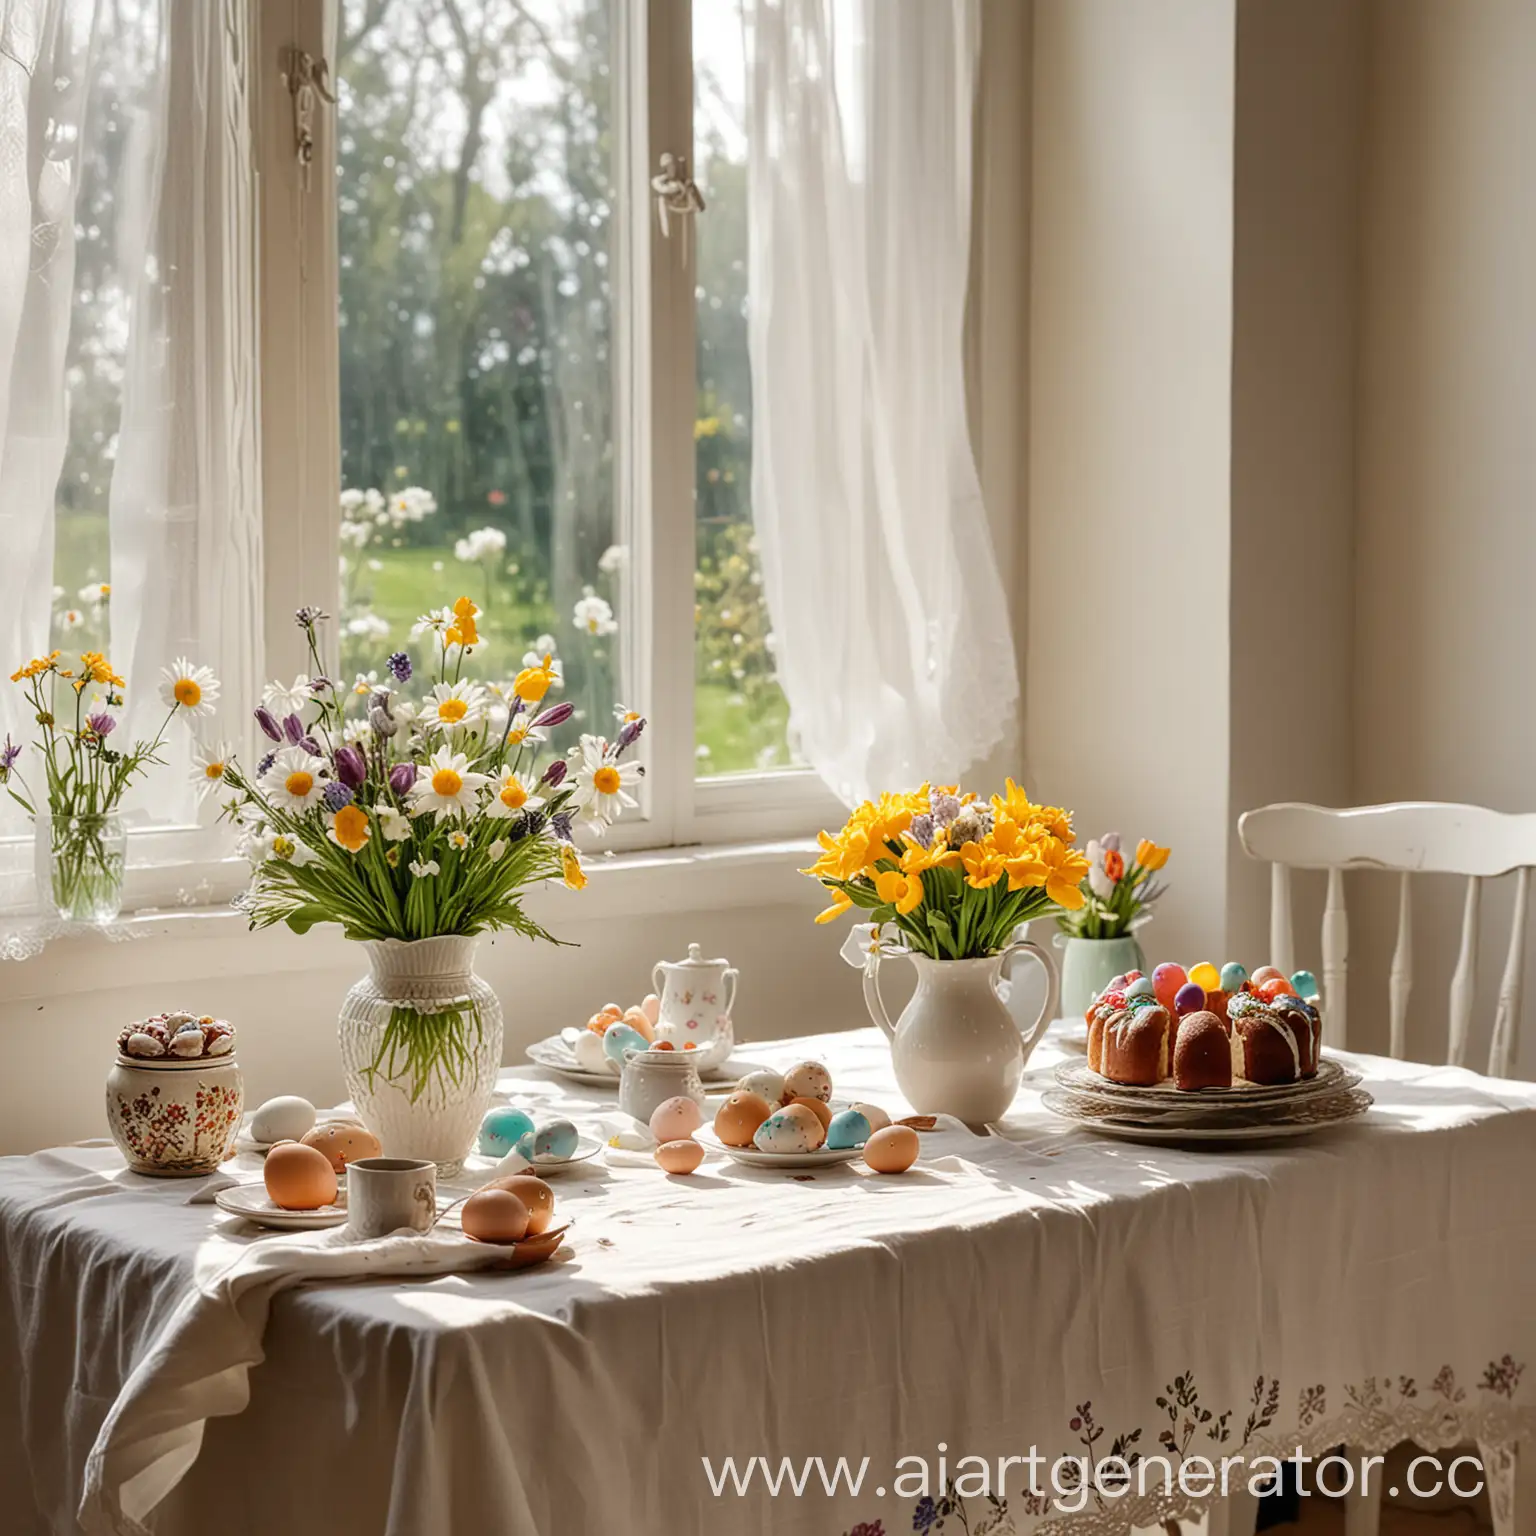 стол с белой скатертью,красивые расписные яйца,куличи праздник пасхи, в вазе стоят цветы и красивый солнечный свет из окна

